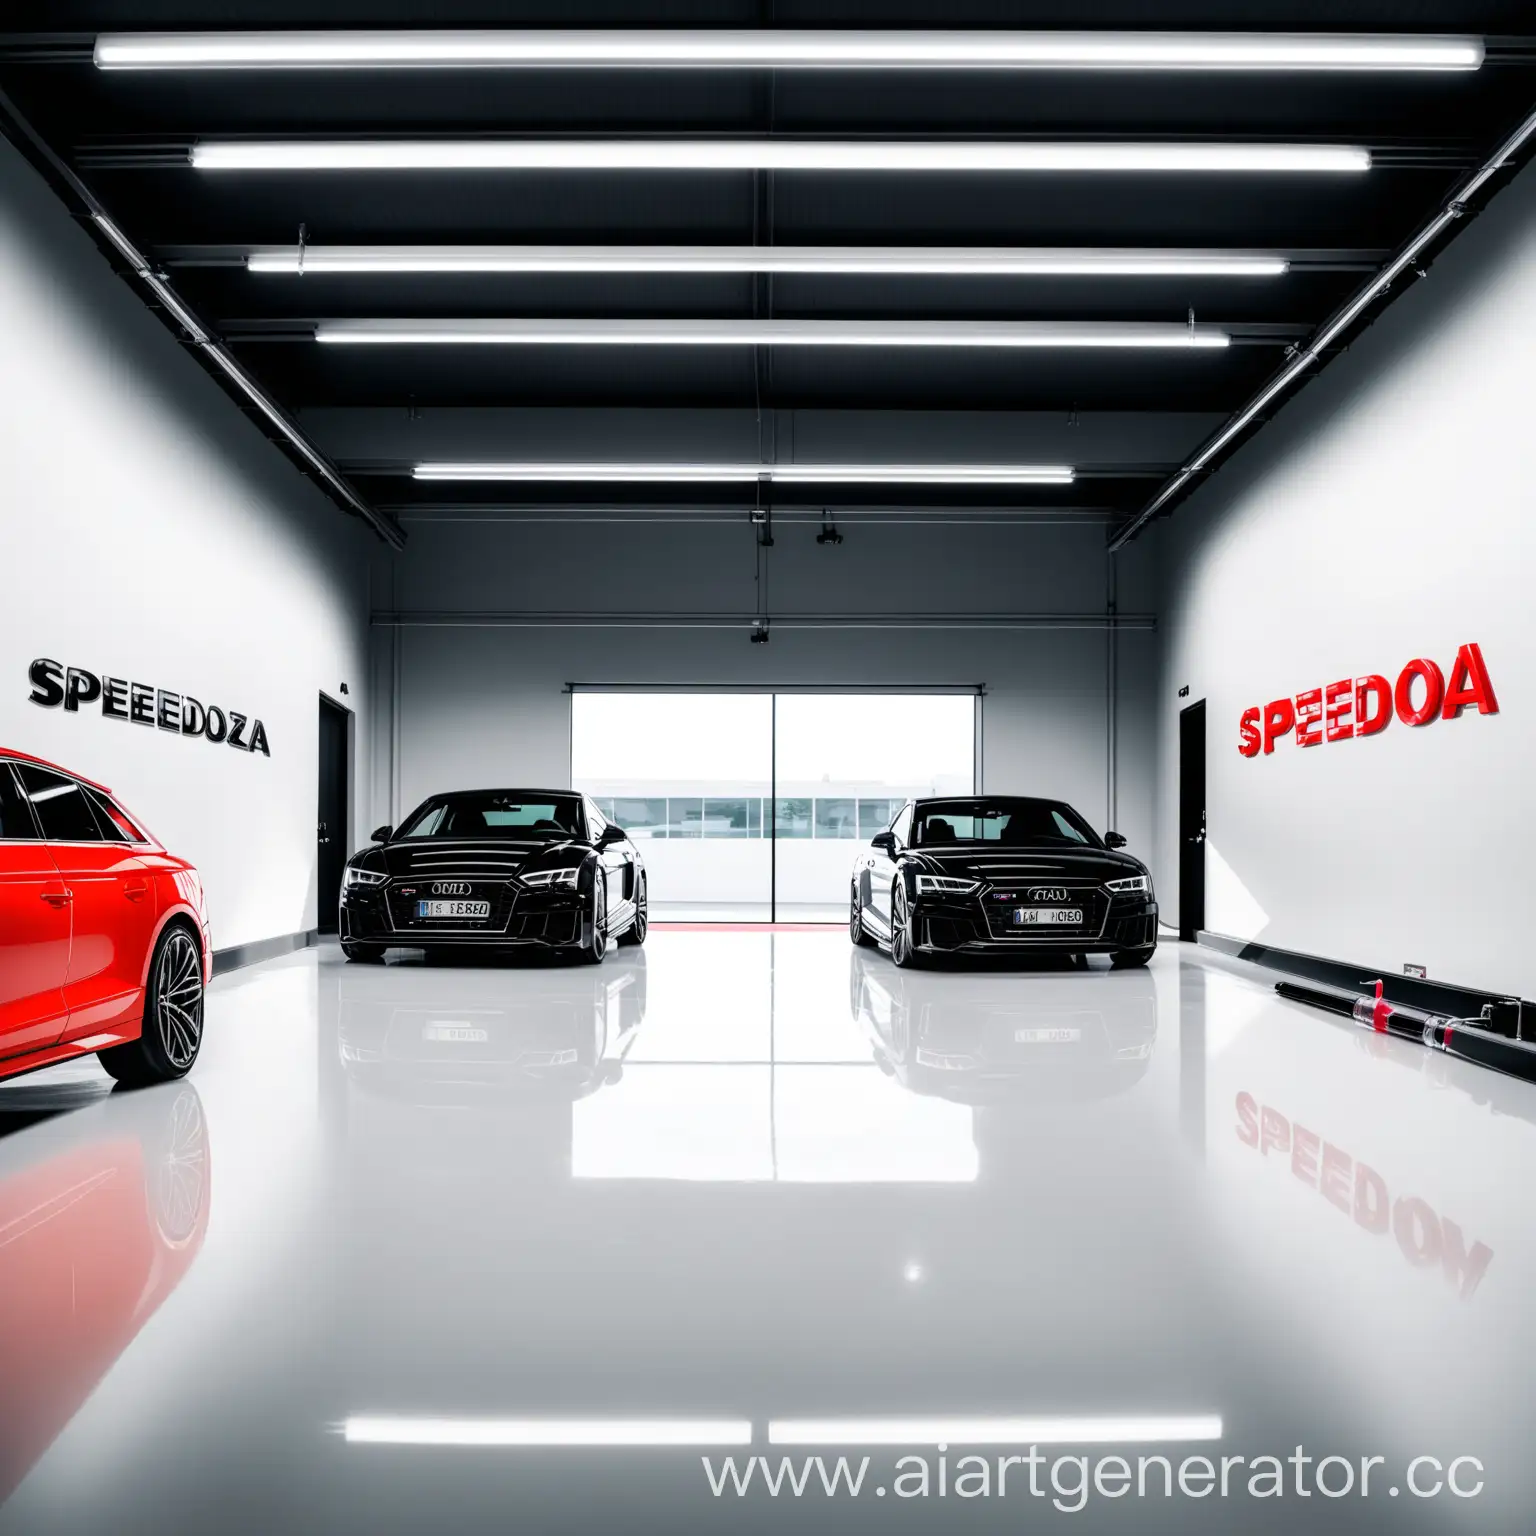 Luxury-Garage-Setting-with-Audi-SpeeDoza-Letters-and-Syringe